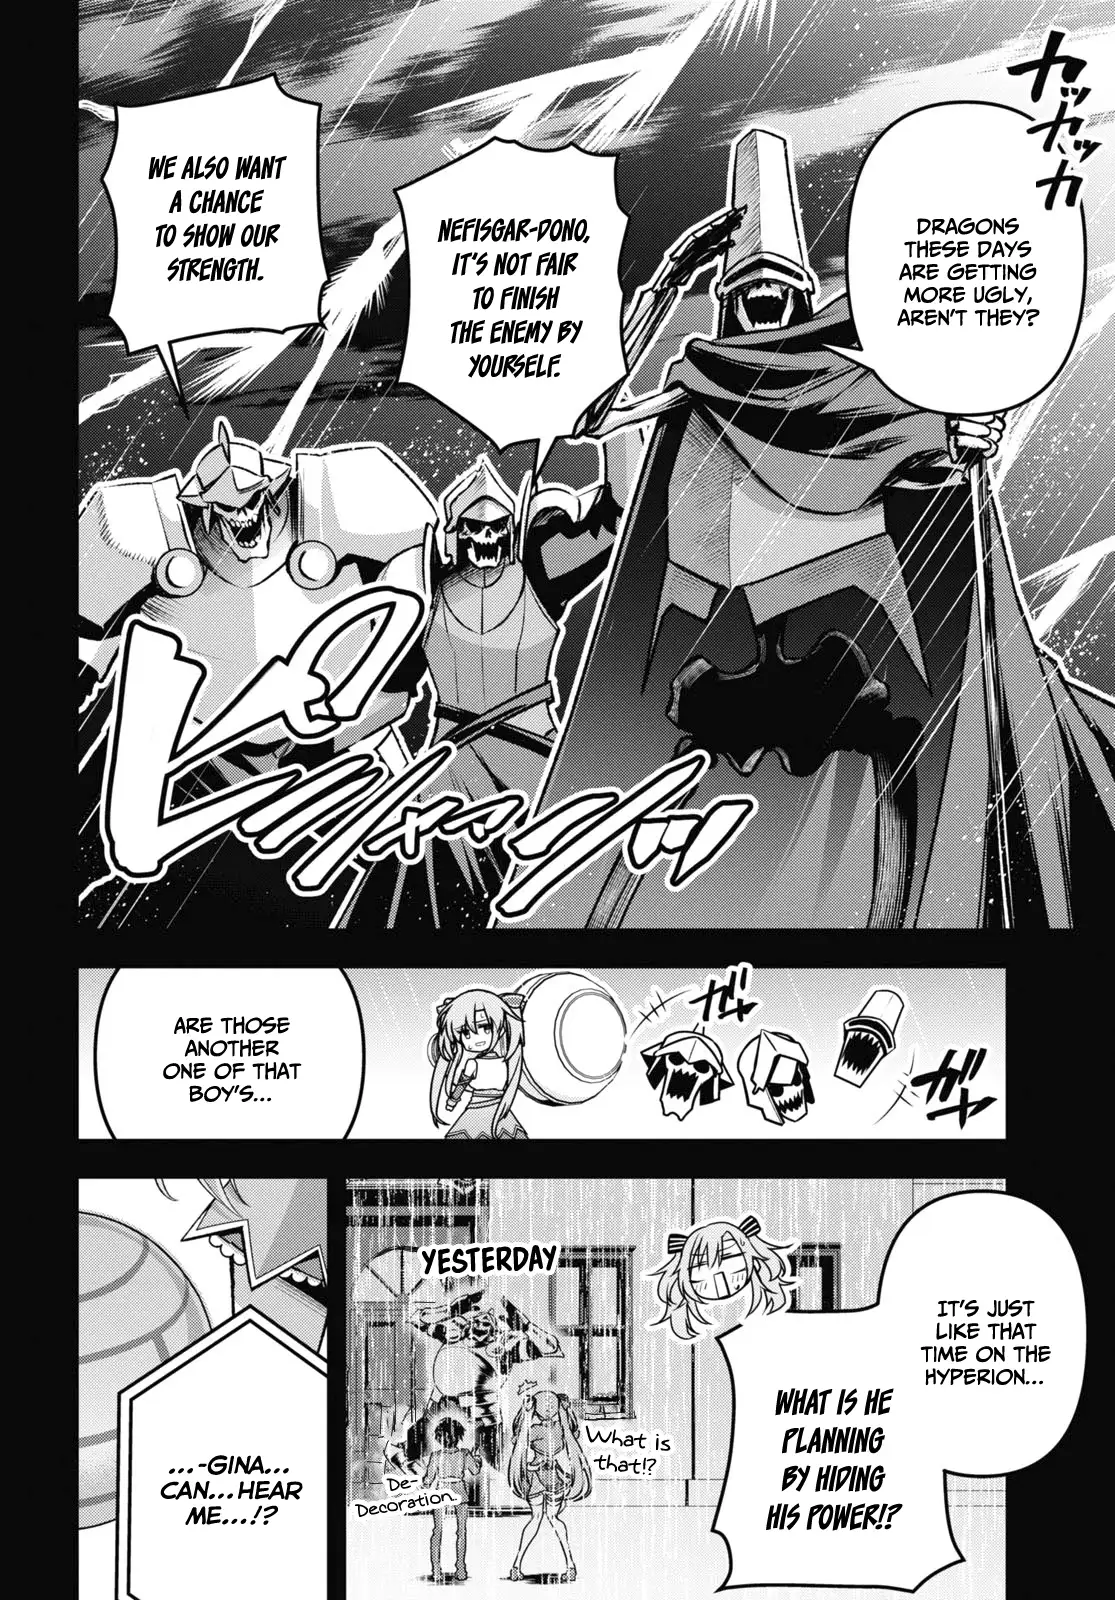 Demon's Sword Master of Excalibur School Chapter 37 - page 5